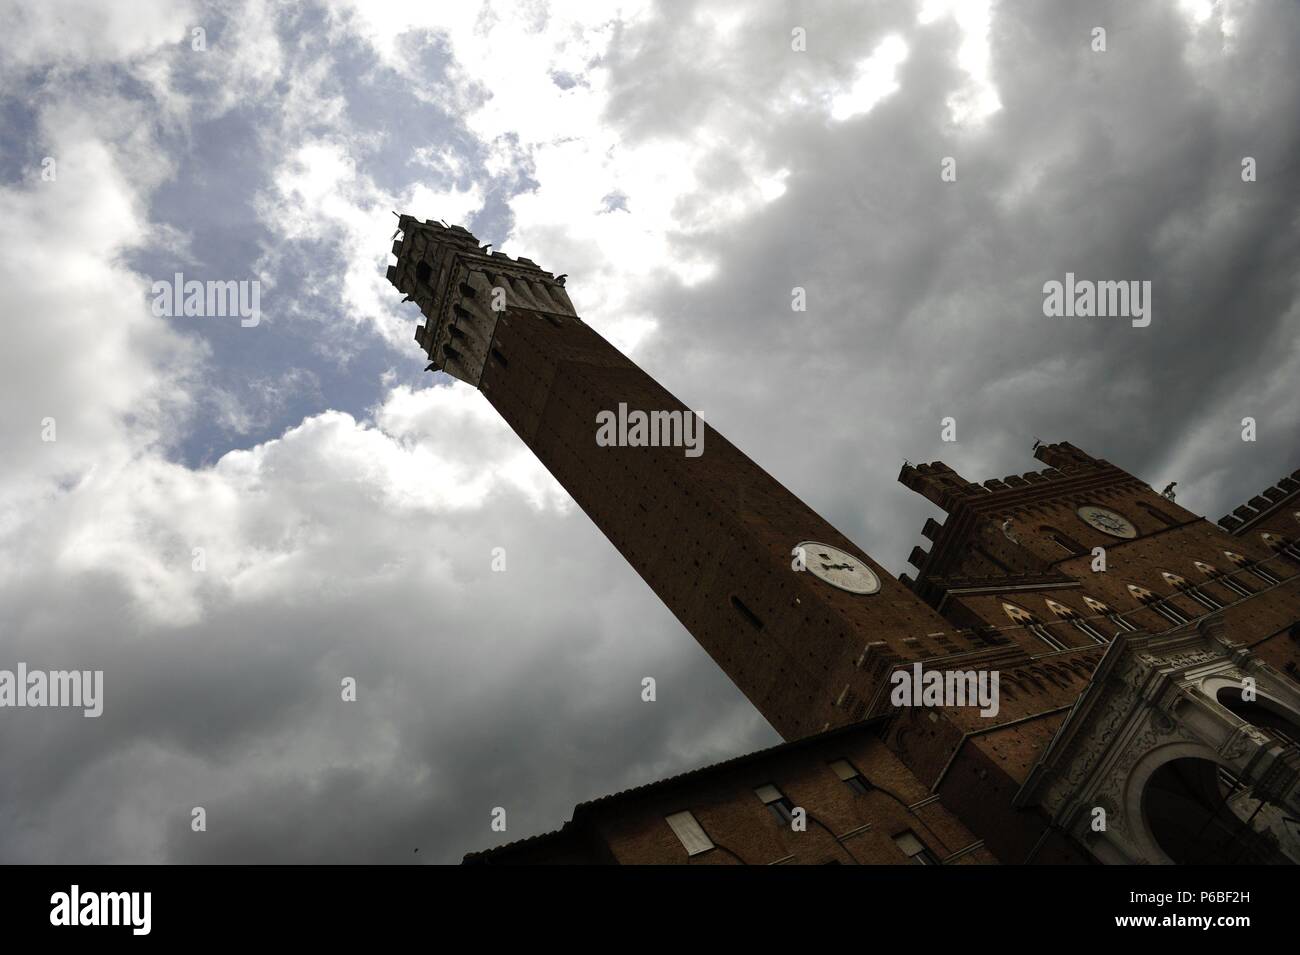 L'Italie. Sienne. Tour du Mangia, adjacent à l'hôtel de ville. Cité médiévale, 14ème siècle. 88 mètres. Piazza del Campo,. Banque D'Images